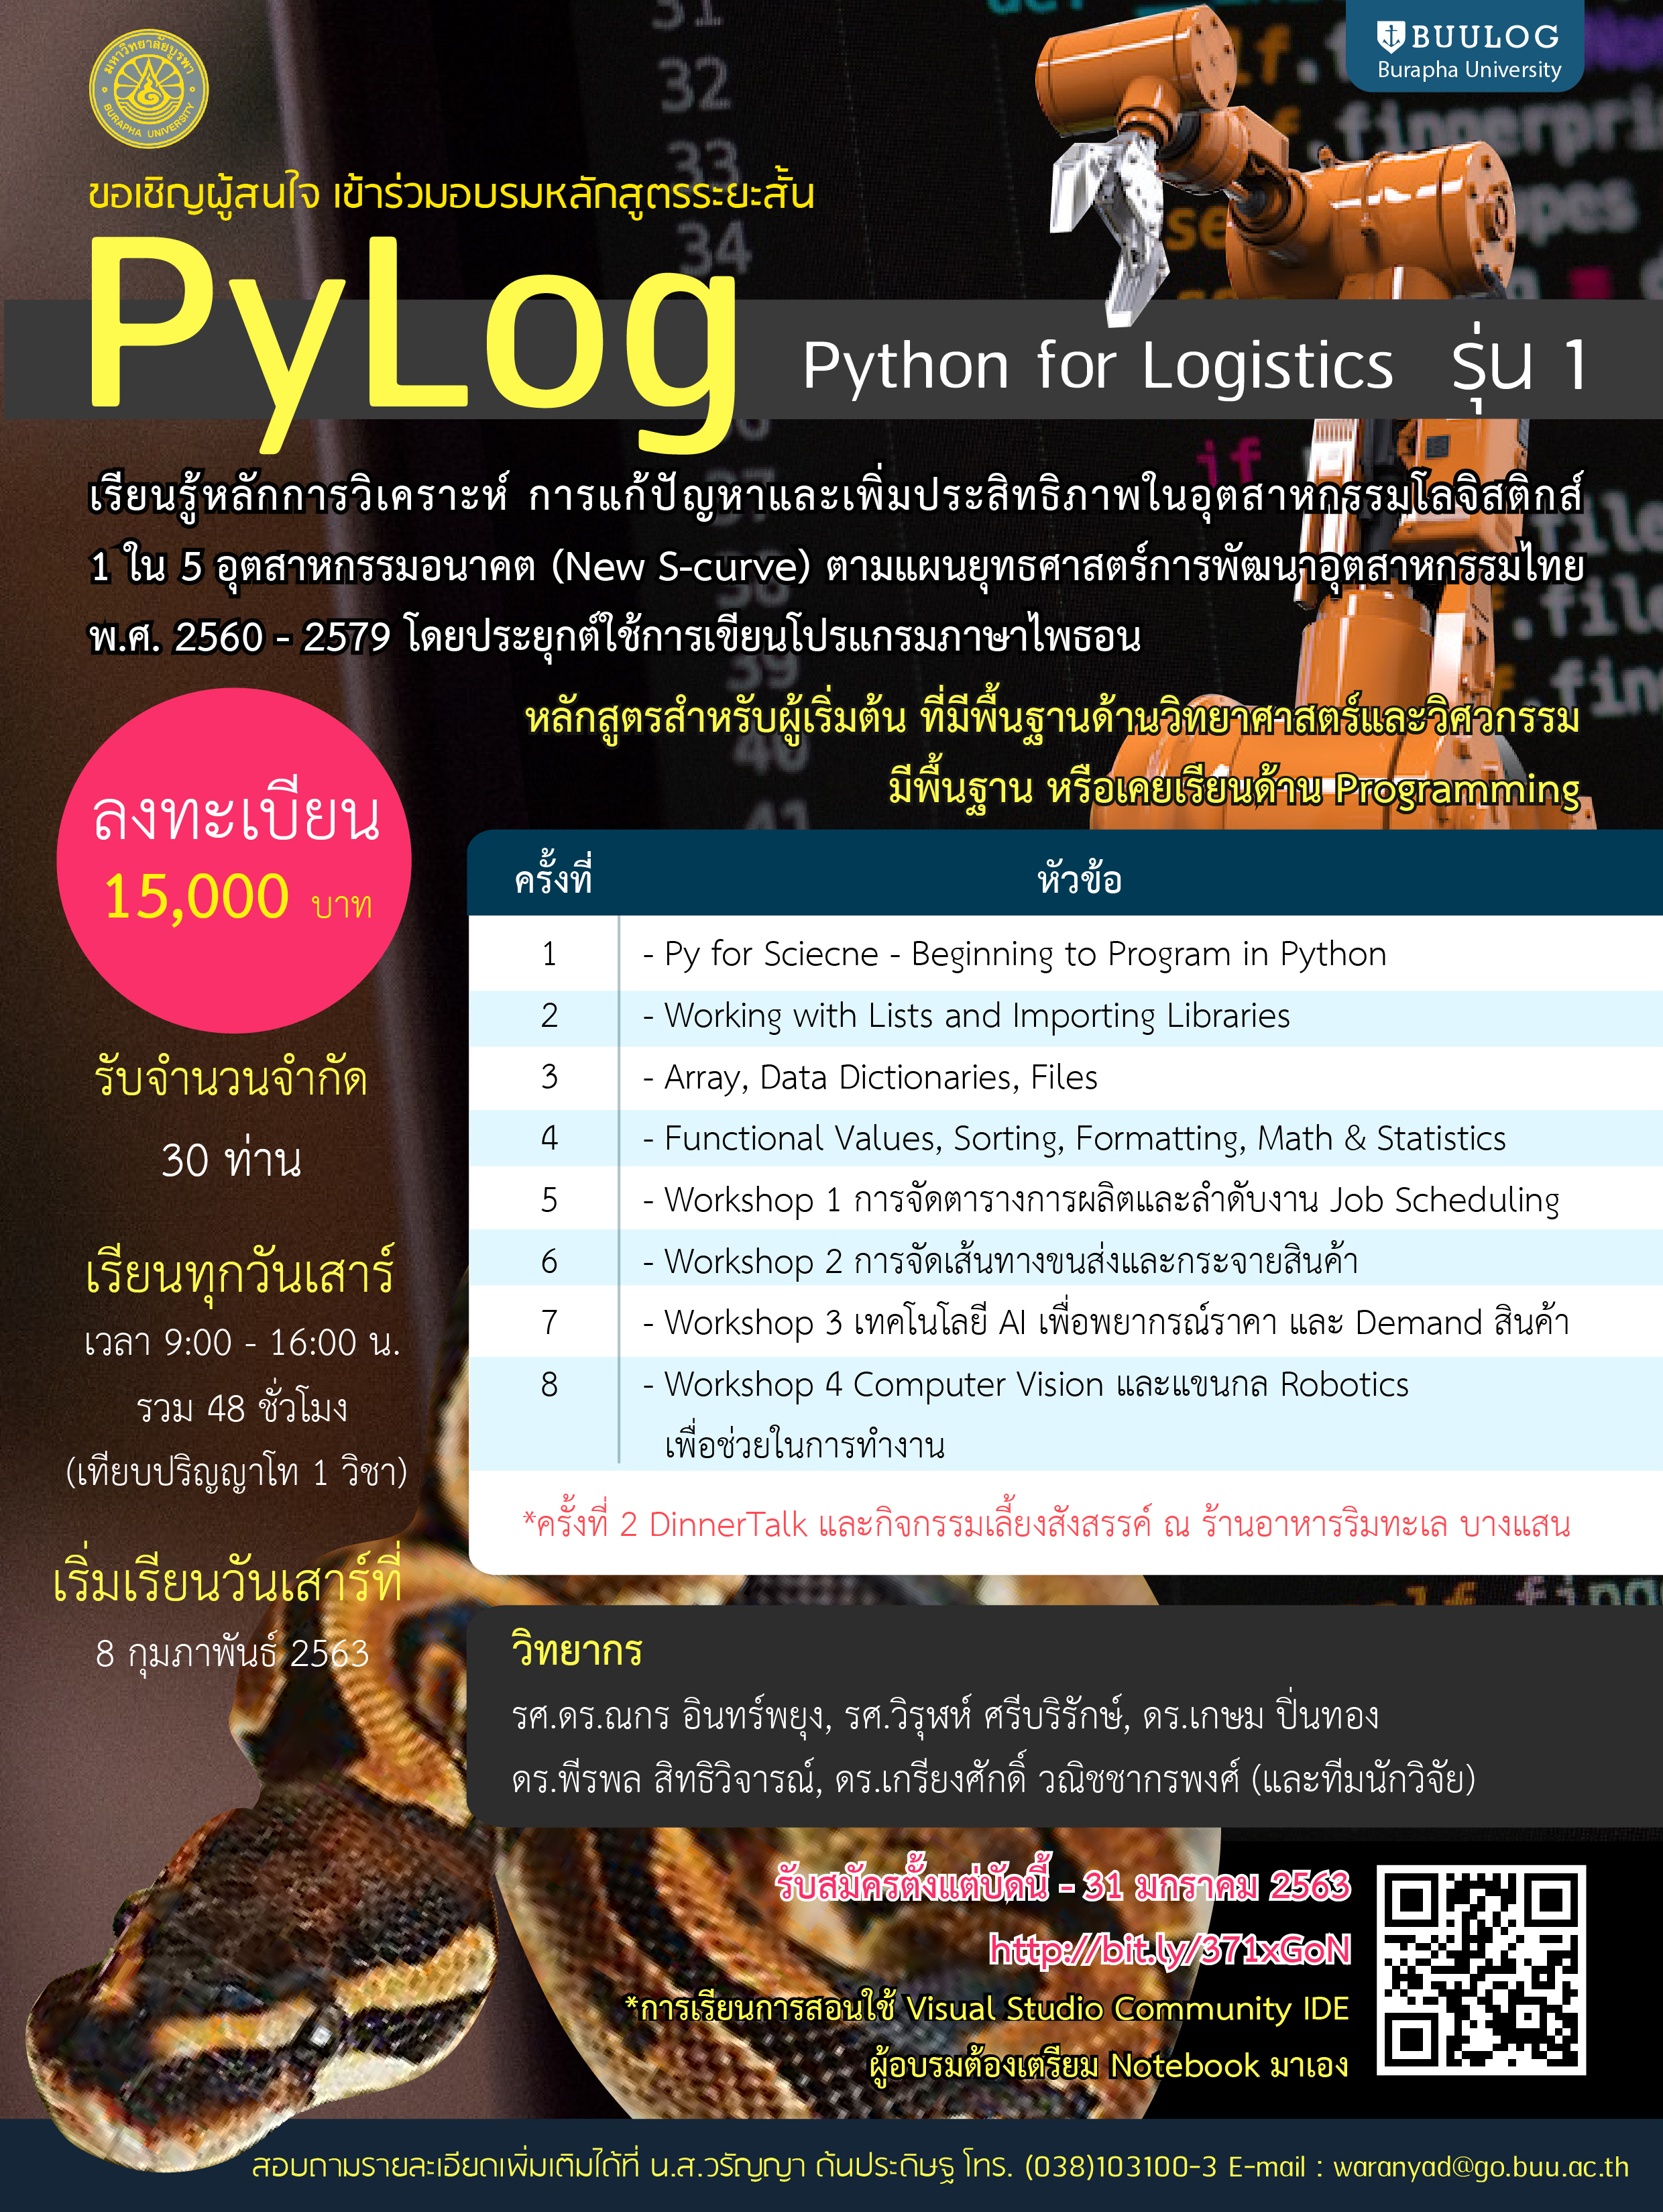 ขอเชิญผู้สนใจ เข้าร่วมอบรมหลักสูตร PyLog Python for Logistics รุ่น 1